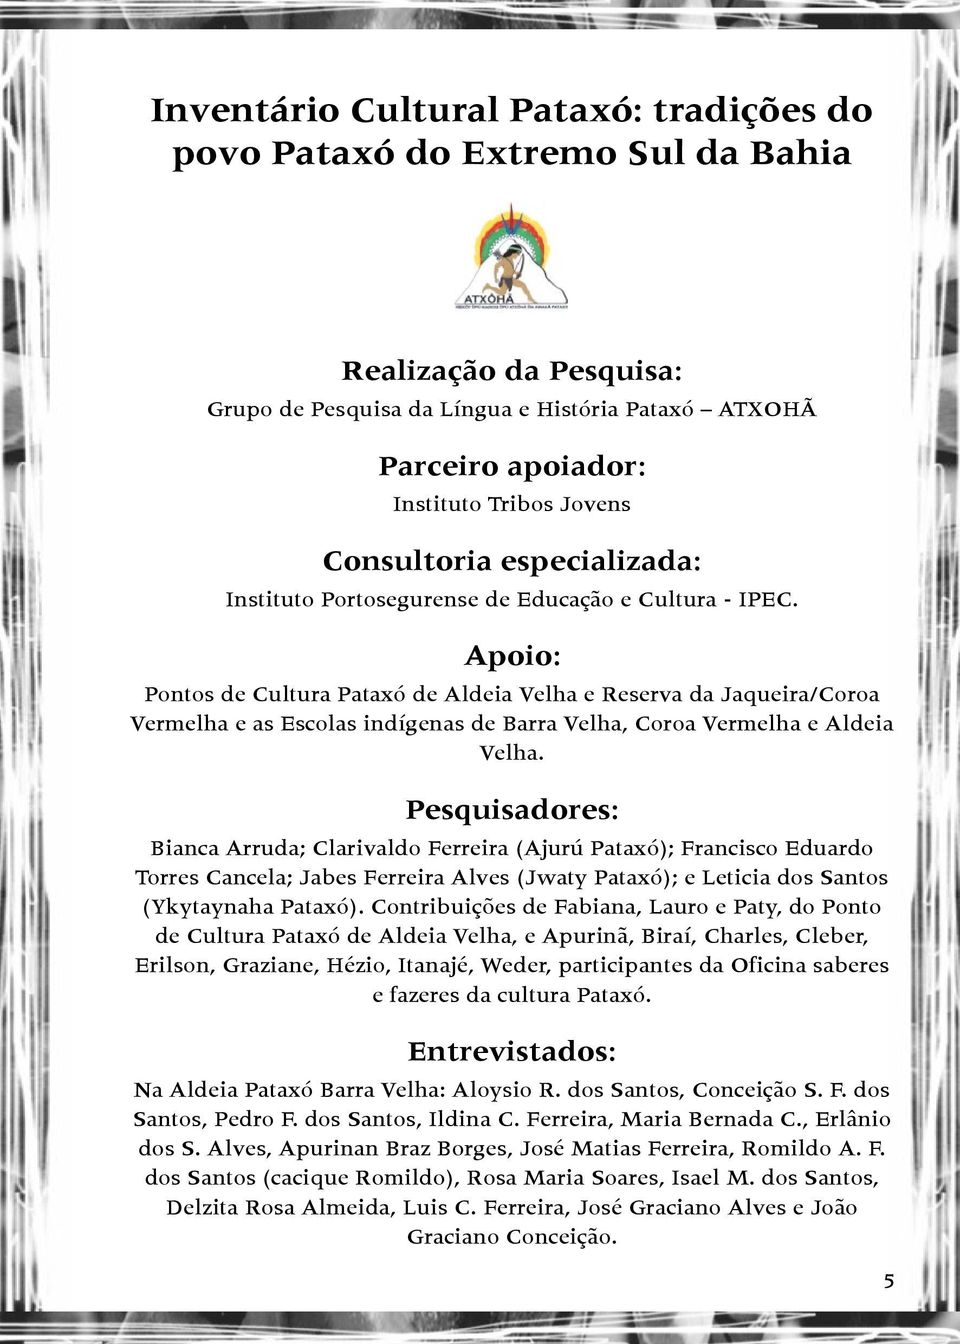 Apoio: Pontos de Cultura Pataxó de Aldeia Velha e Reserva da Jaqueira/Coroa Vermelha e as Escolas indígenas de Barra Velha, Coroa Vermelha e Aldeia Velha.